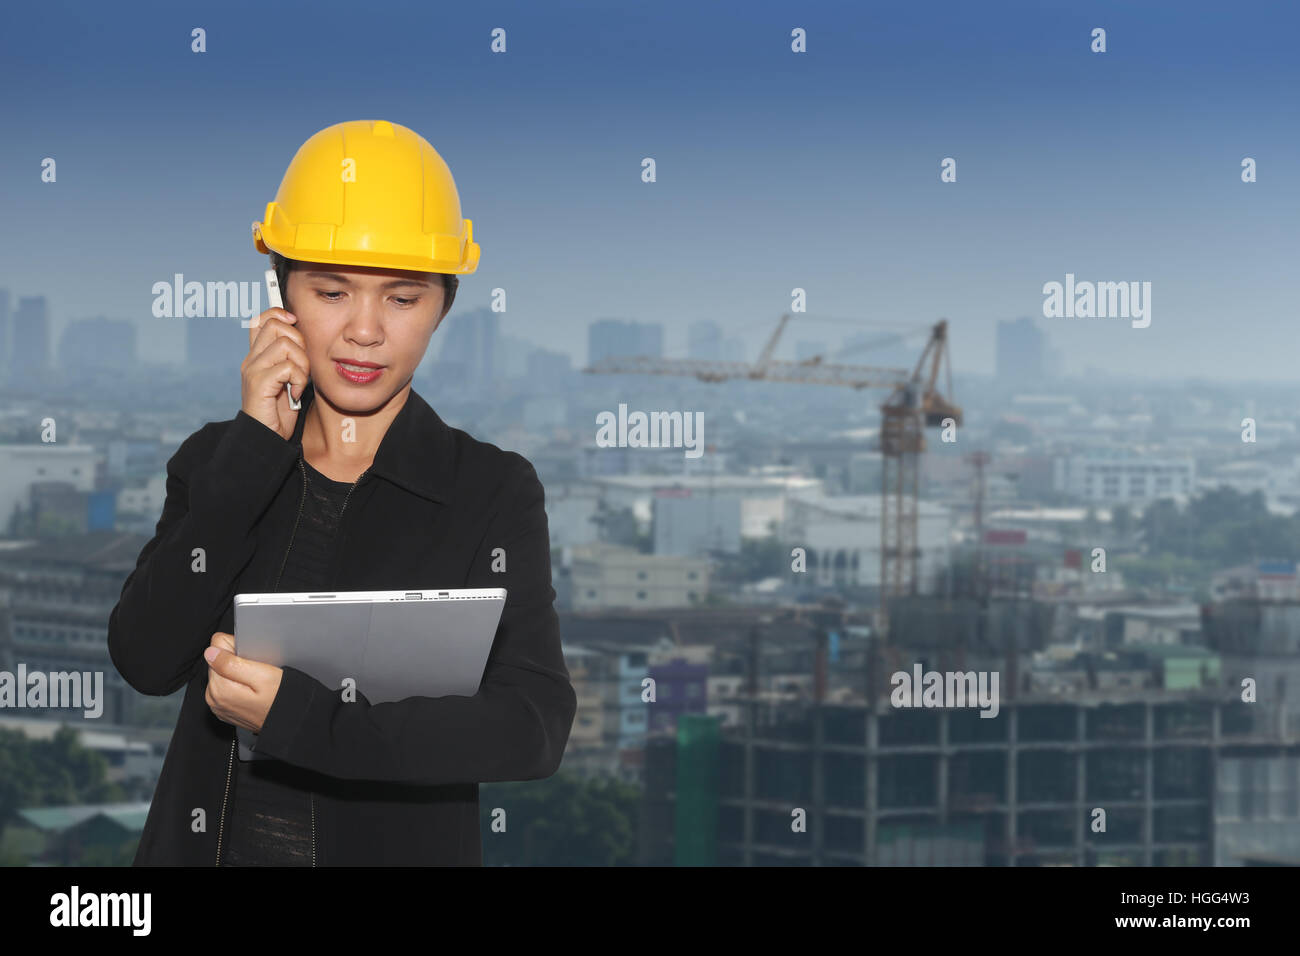 Ingenieurinnen war am Telefon auf Stadtbild Hintergrund, Konzept arbeiten und Bau zu kommunizieren. Stockfoto